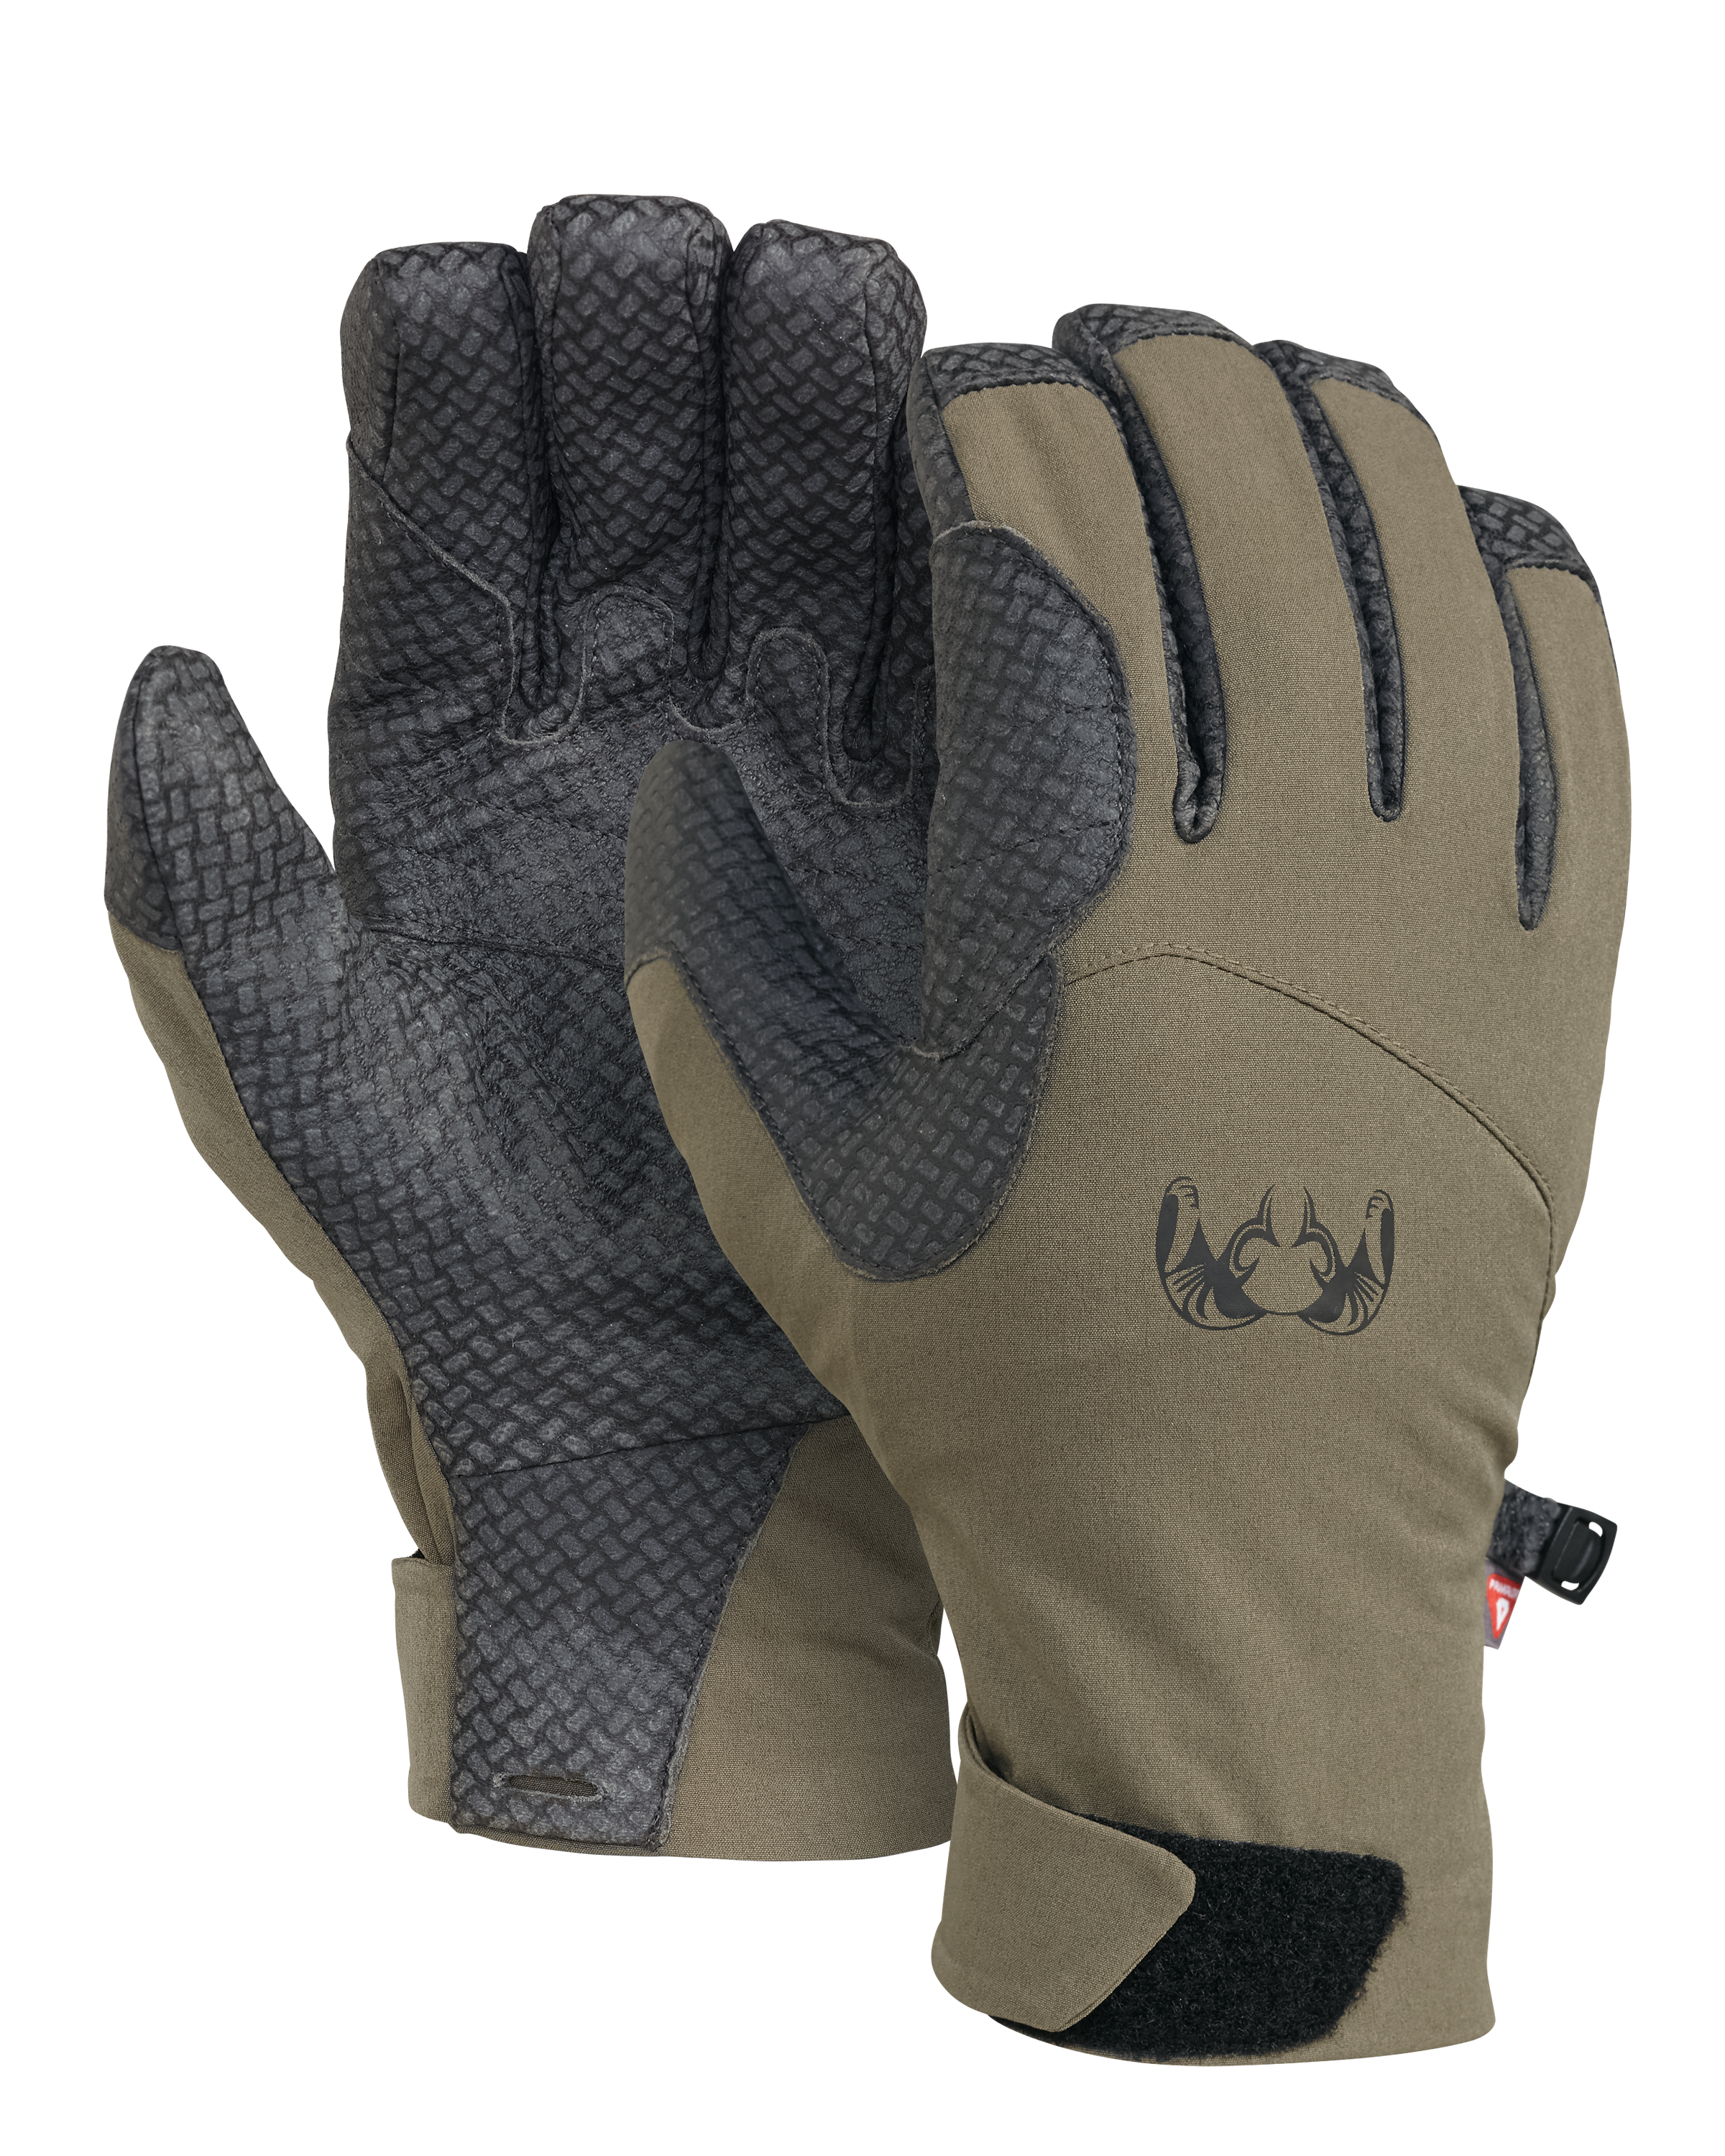 KUIU Yukon PRO Hunting Glove in Ash | Size Medium